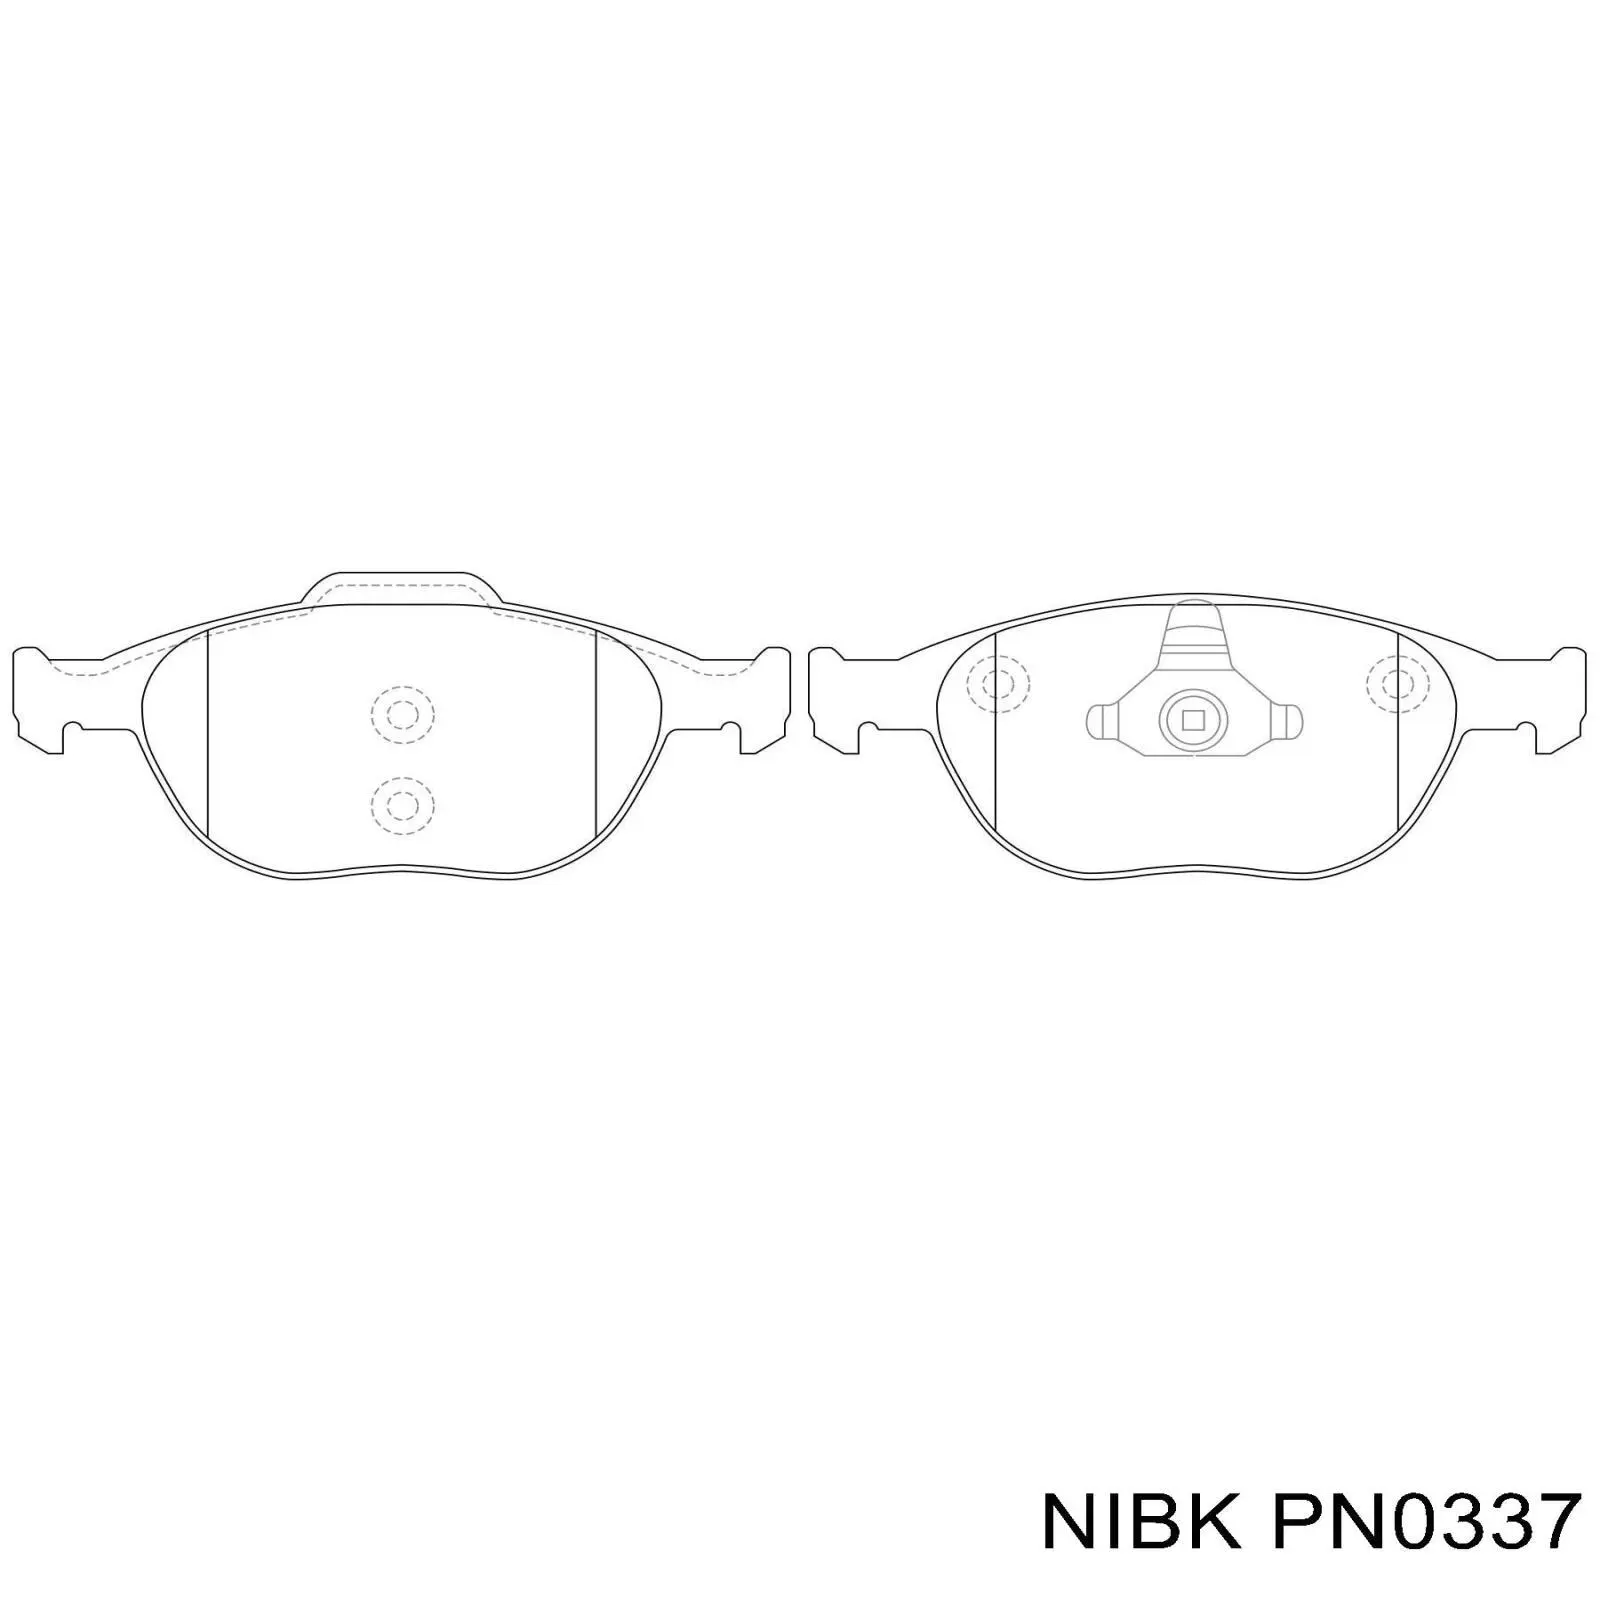 PN0337 Nibk колодки тормозные передние дисковые